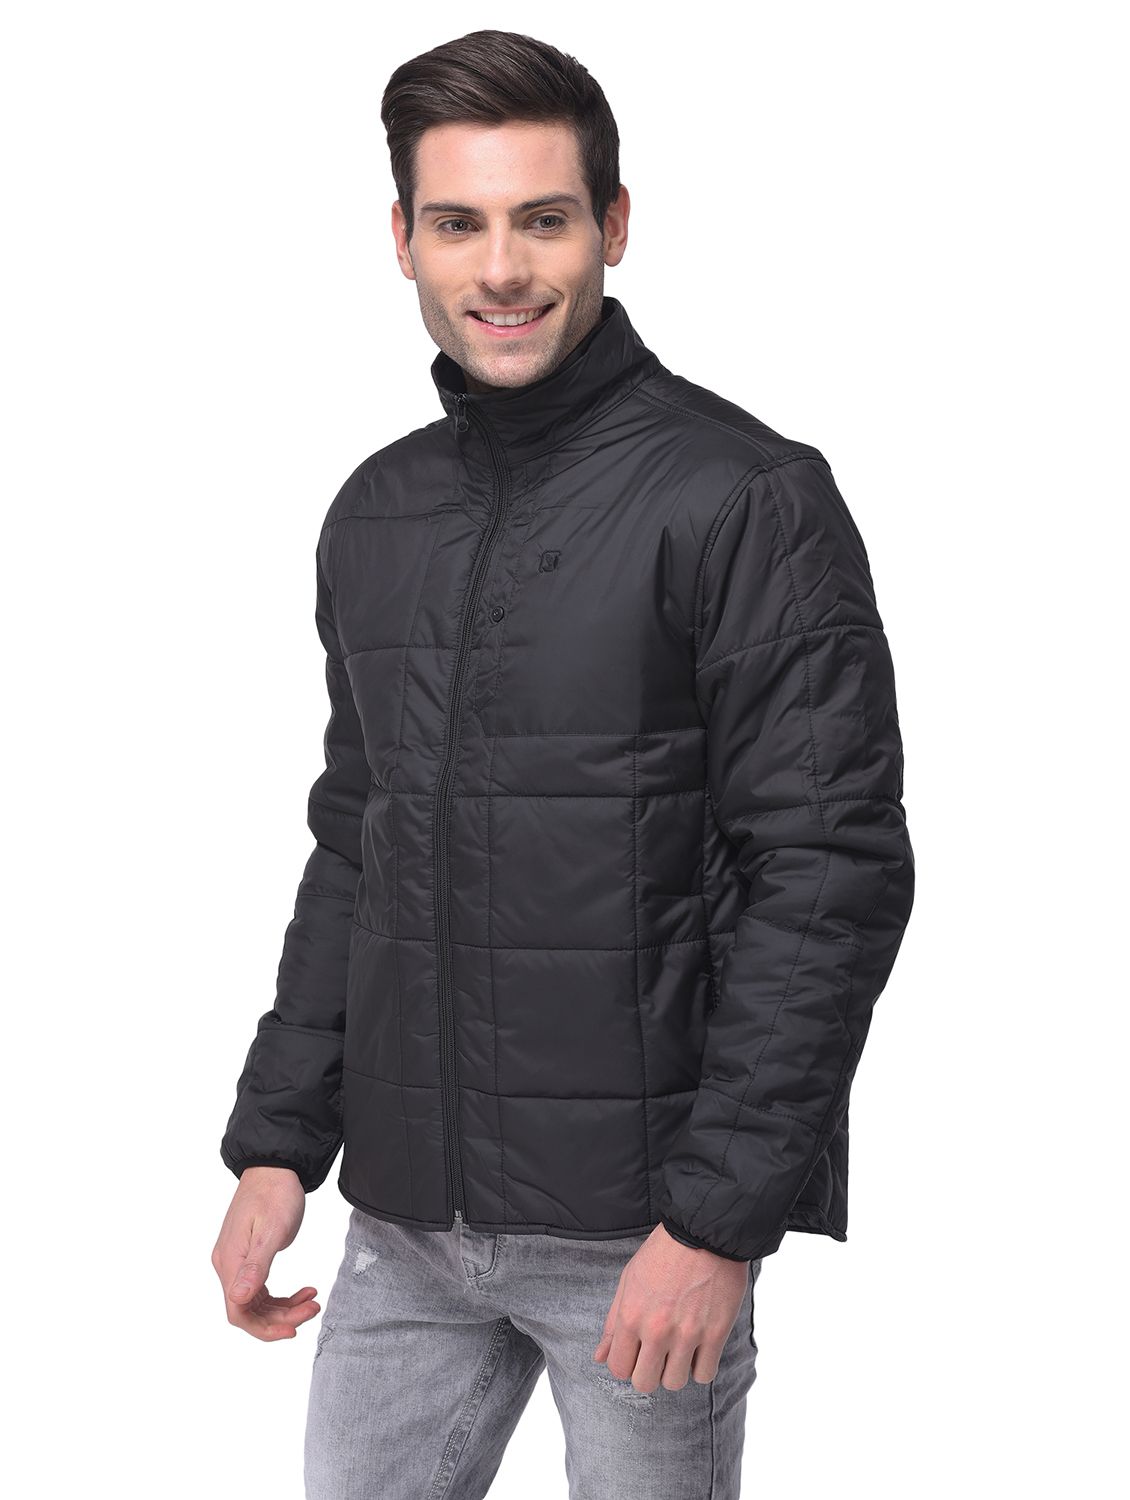 Black quilted jacket for men